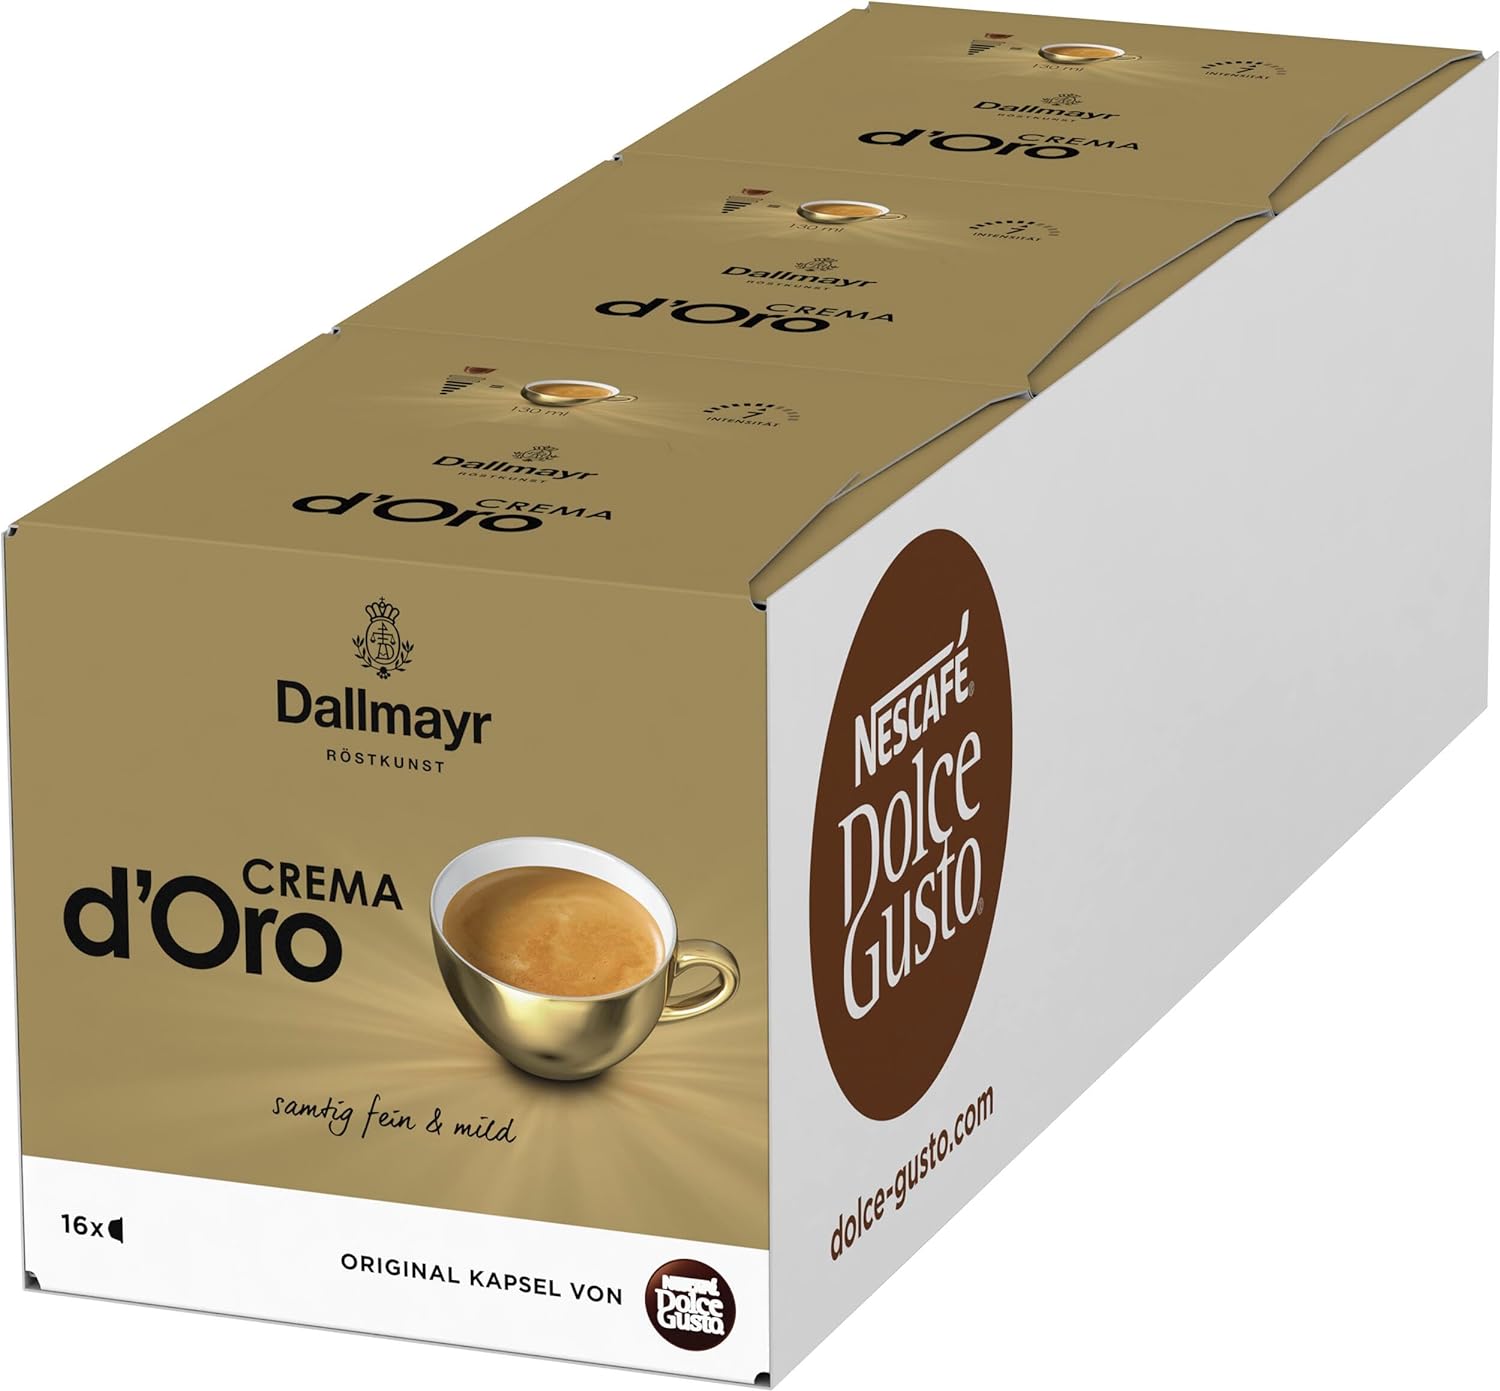 Nescafé Dolce Gusto Capsule Dallmayr Crema D'oro, Coffee, Coffee, Pack of 2, 2 x 16 Capsules